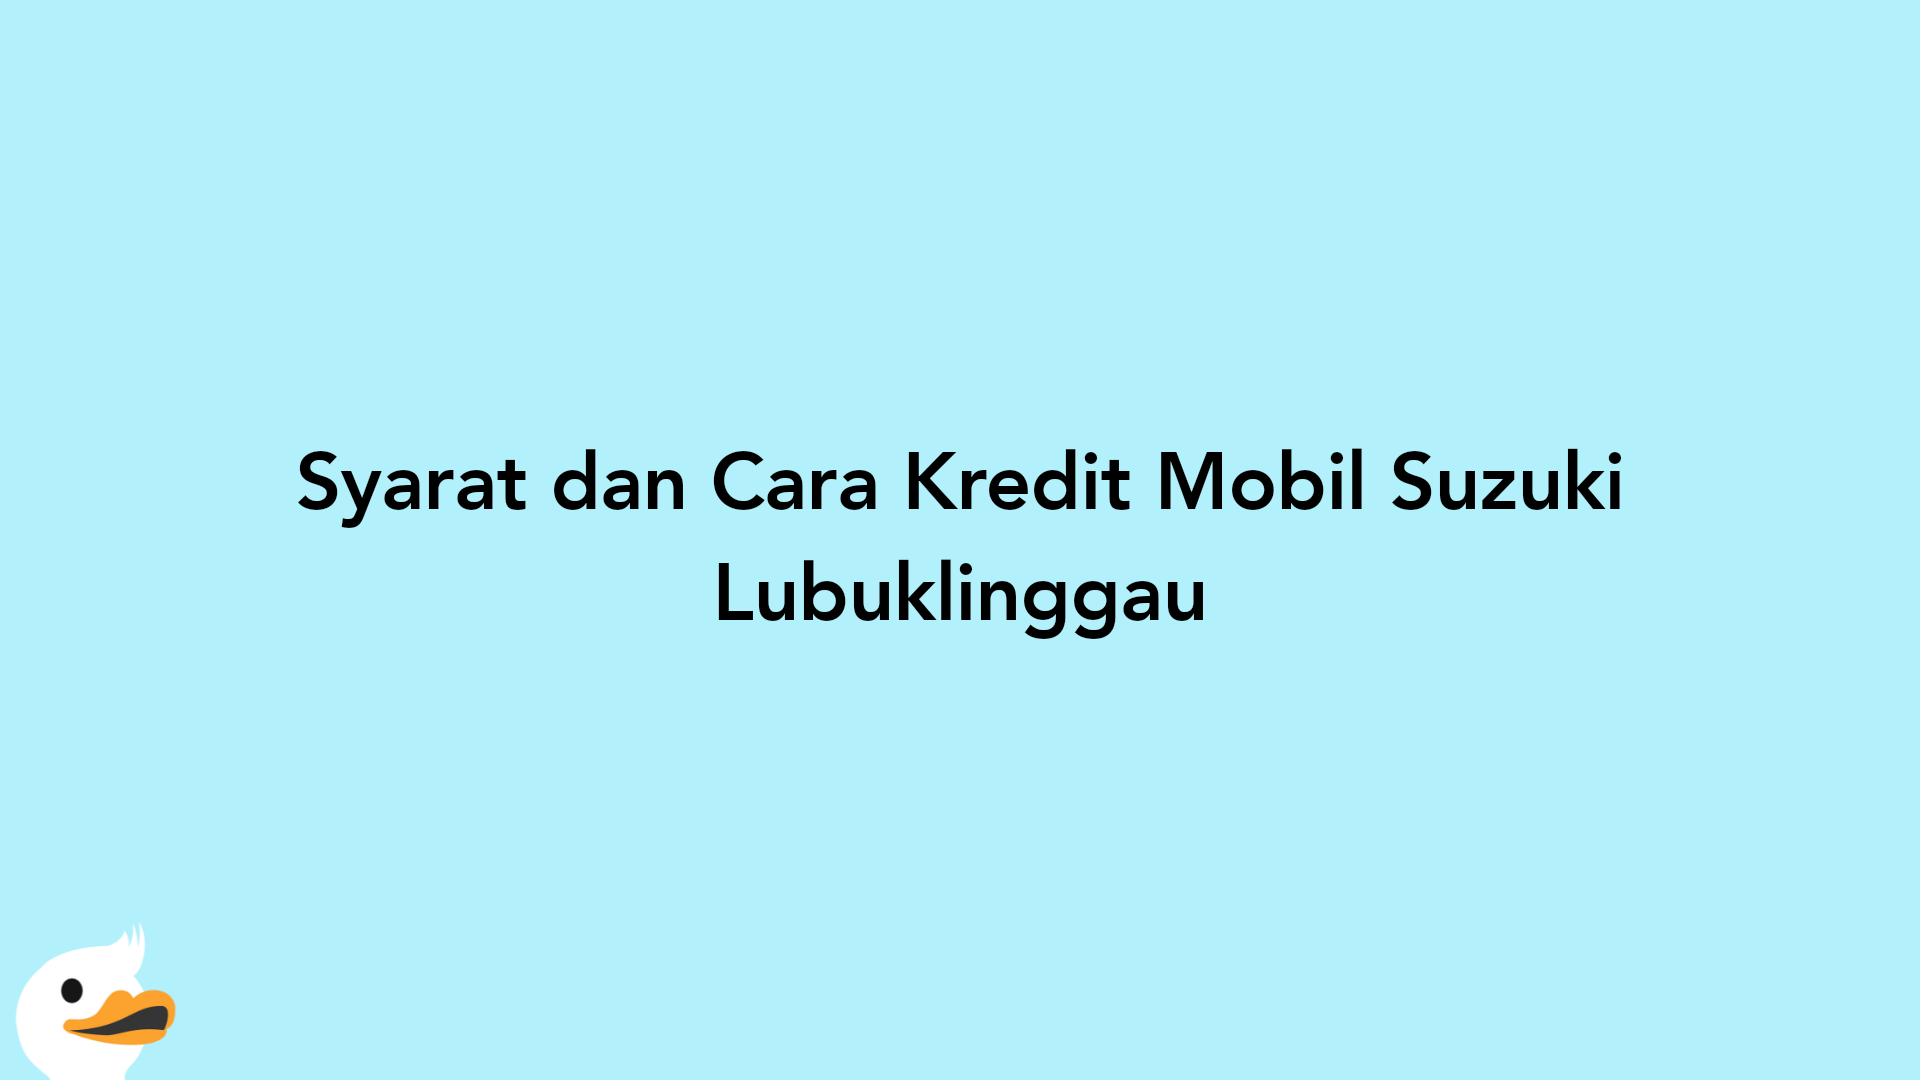 Syarat dan Cara Kredit Mobil Suzuki Lubuklinggau